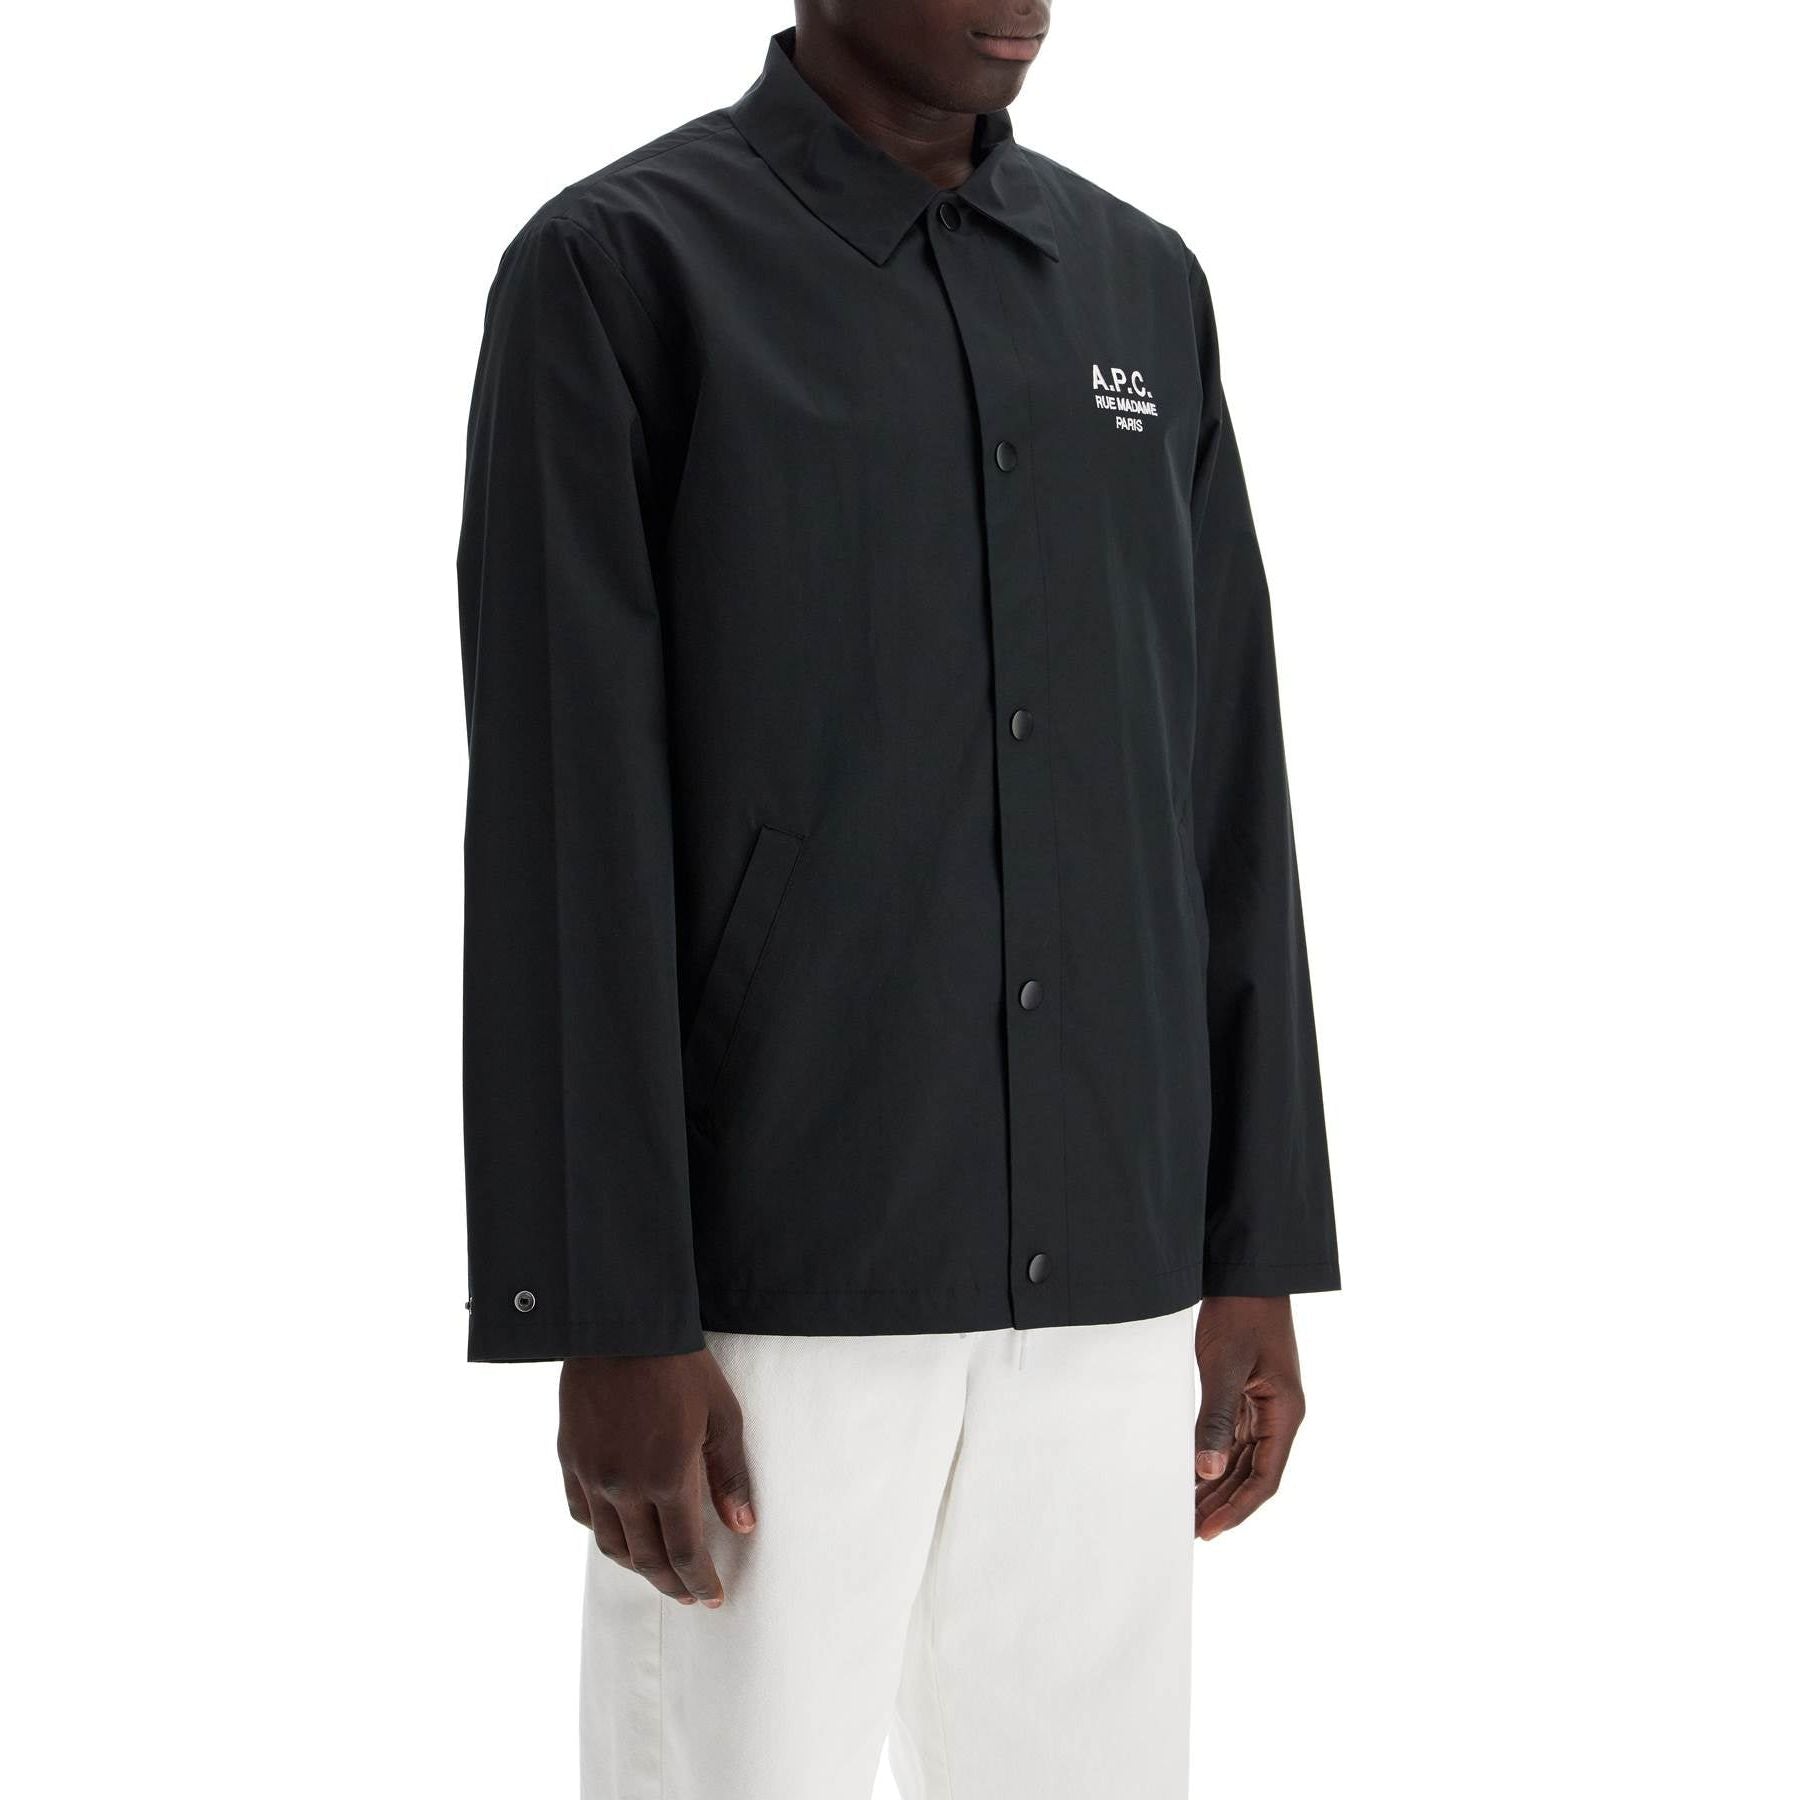 Regis Cotton-Blend Jacket